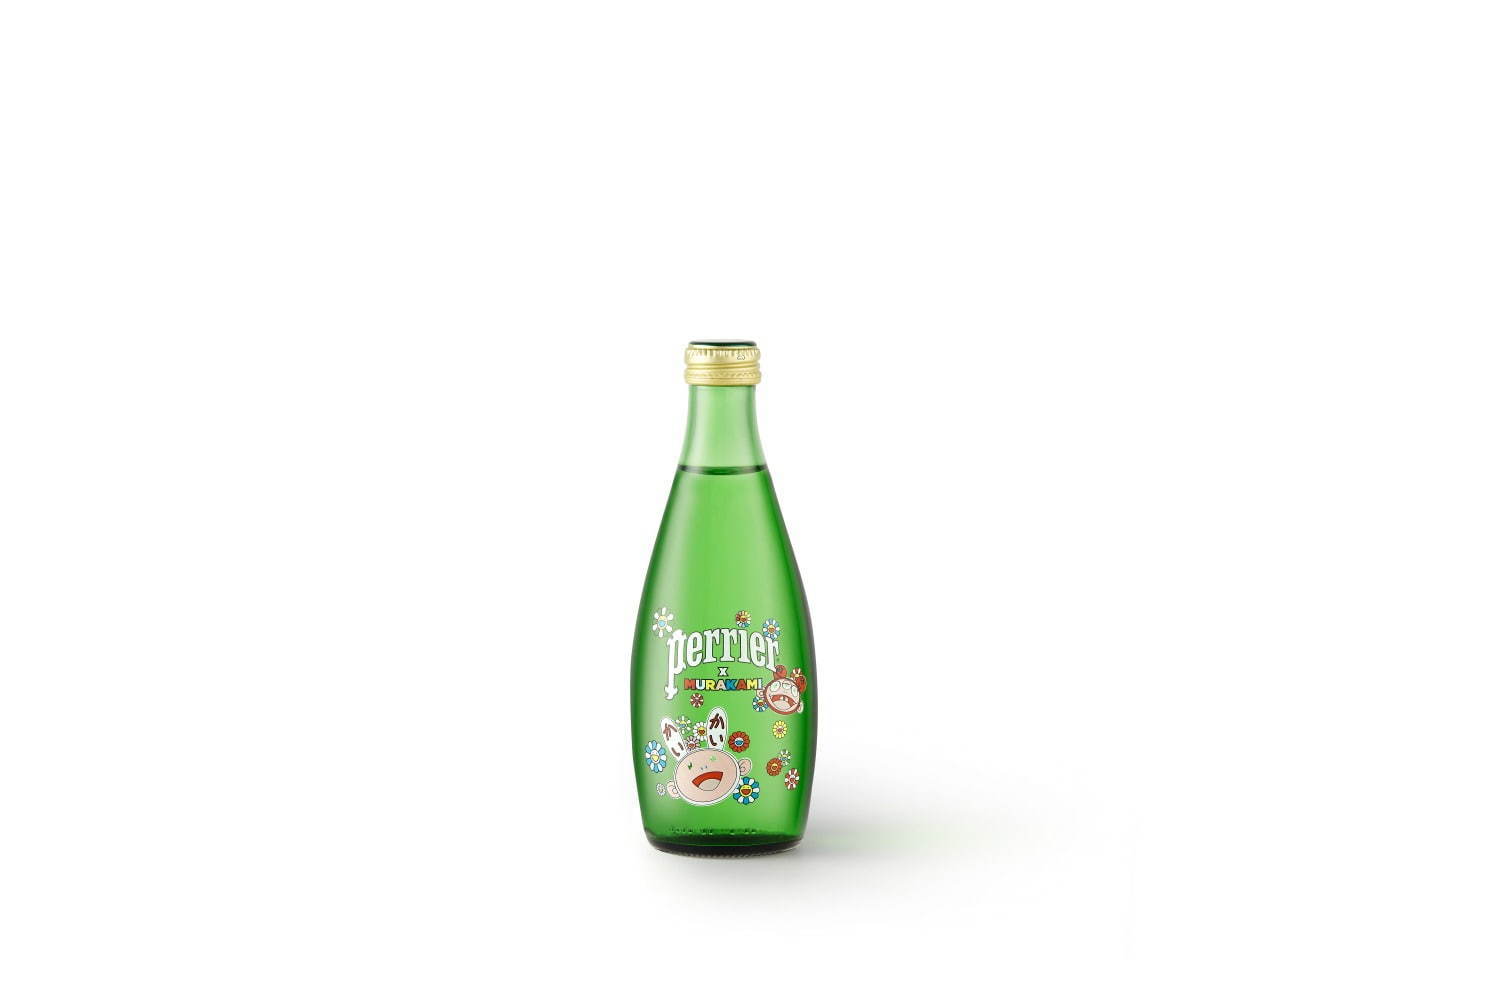 村上隆 × ペリエ (perrier) コラボレーションボトル - ミネラルウォーター